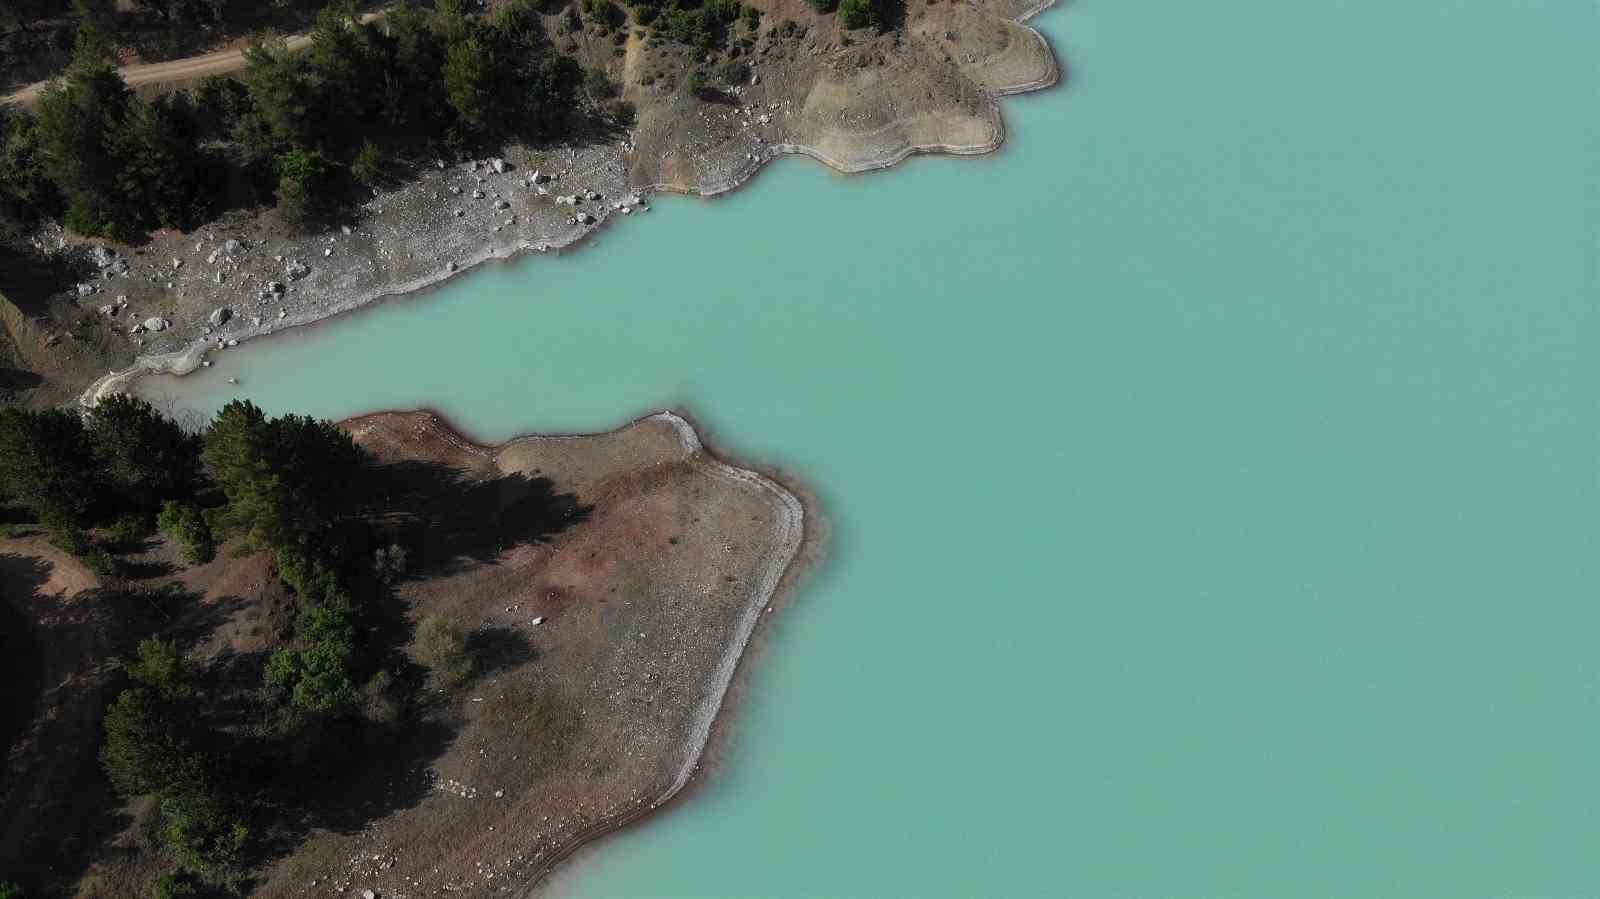 Bursa’da yılda sadece 1 ay turkuaz renge bürünen göleti görenler hayran kalıyor. Gören Salda gölüne benzetiyor. Harmancık ilçesi Karaca ...